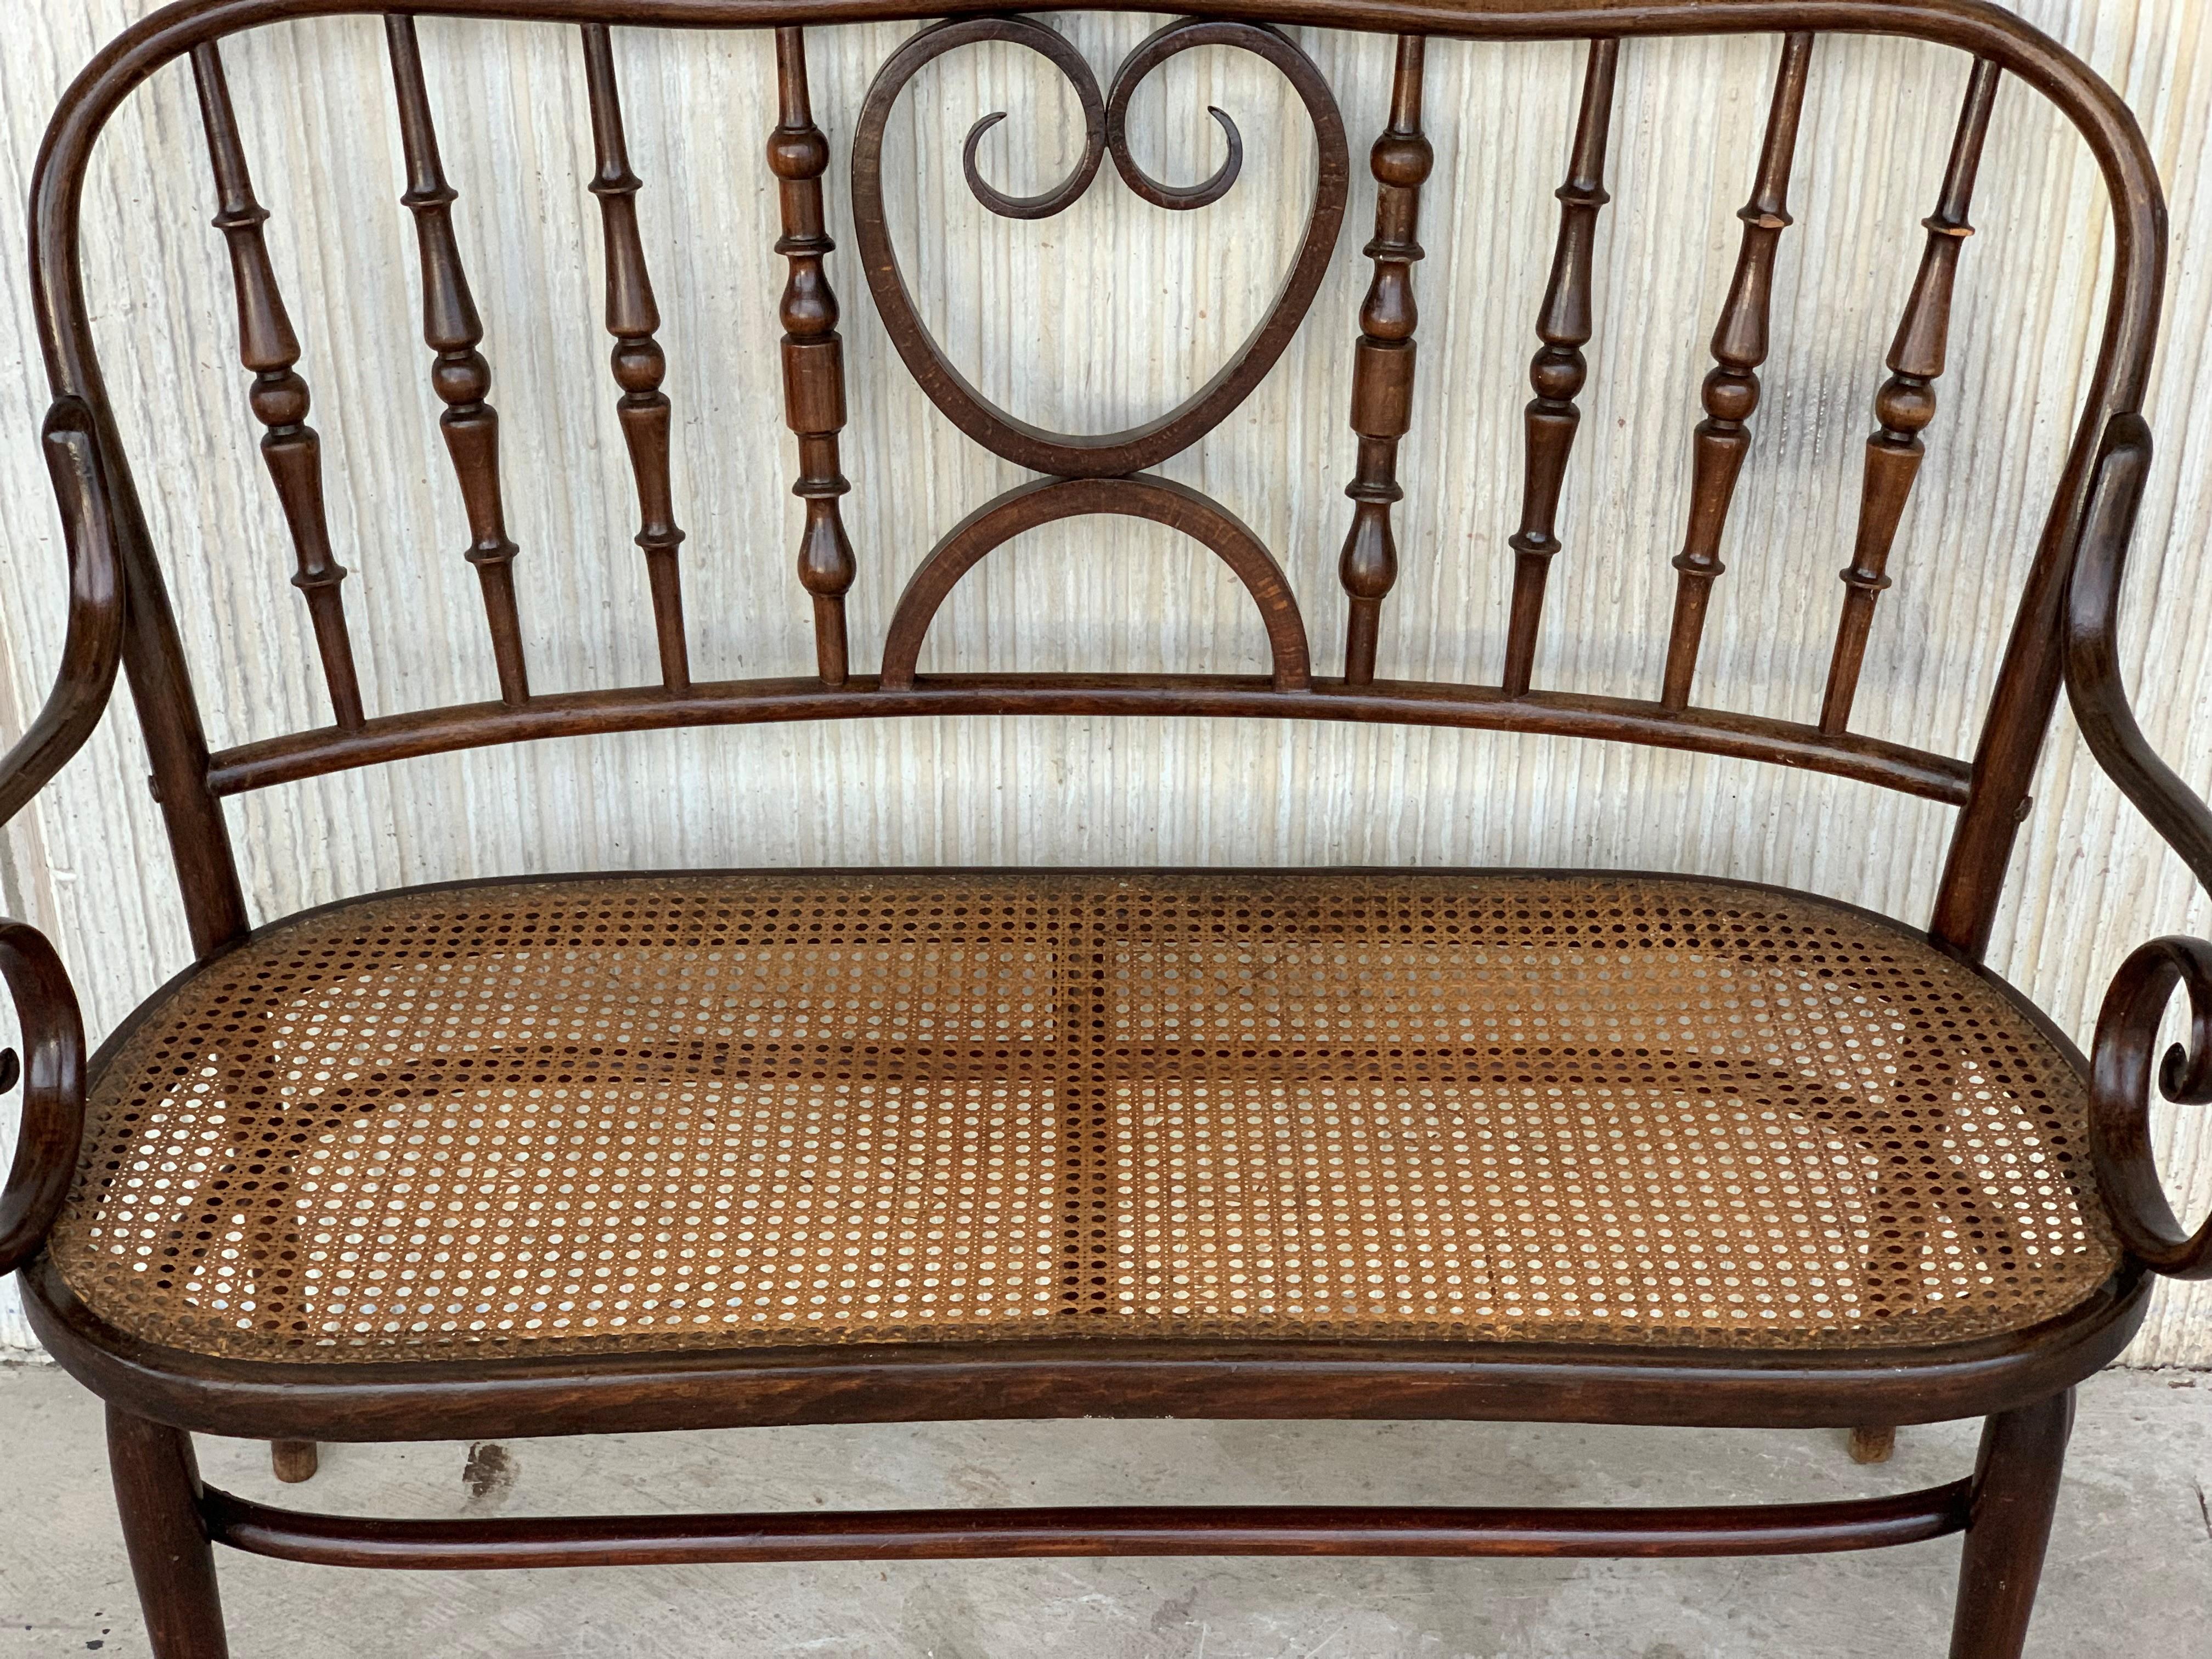 canapé en bois courbé du 20e siècle de style Thonet, vers 1925, siège canné

Ce canapé est très lourd et robuste.